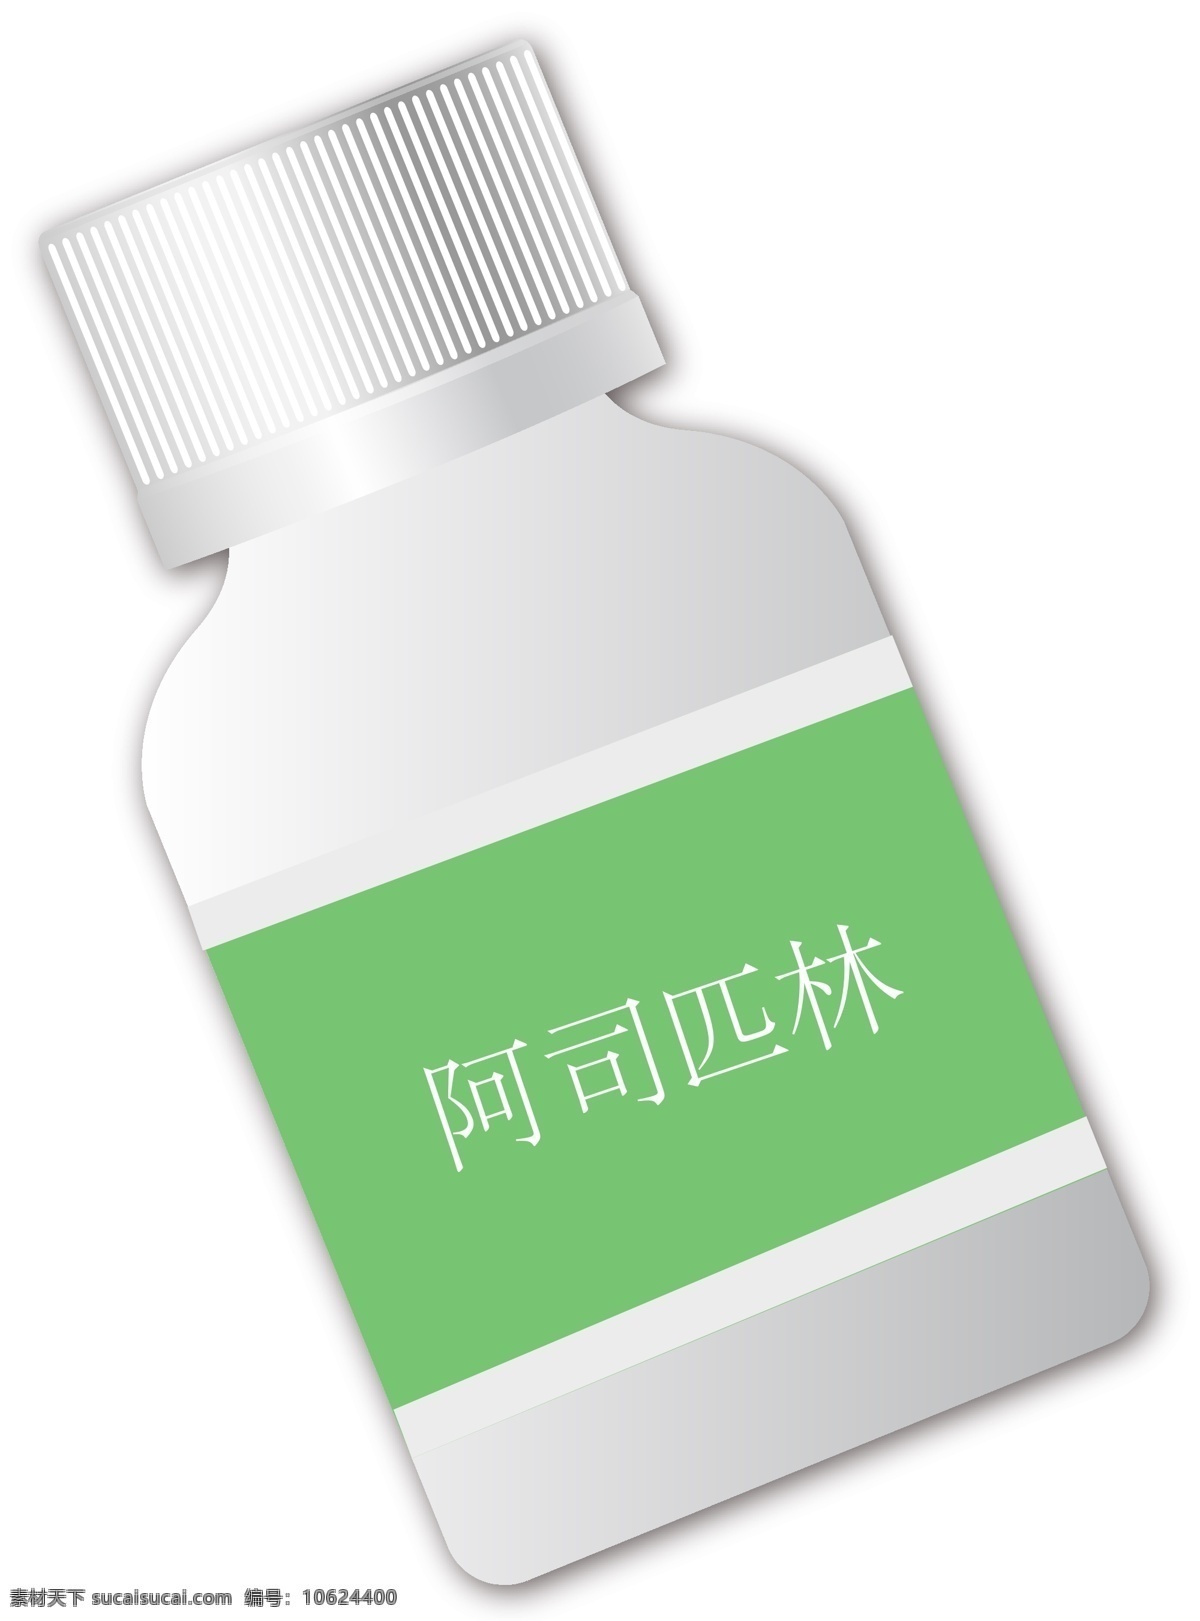 绿色 标签 立体 装饰 瓶 插画 白边绿色标签 白色瓶体 立体装饰瓶 竖纹瓶盖 一个立体瓶子